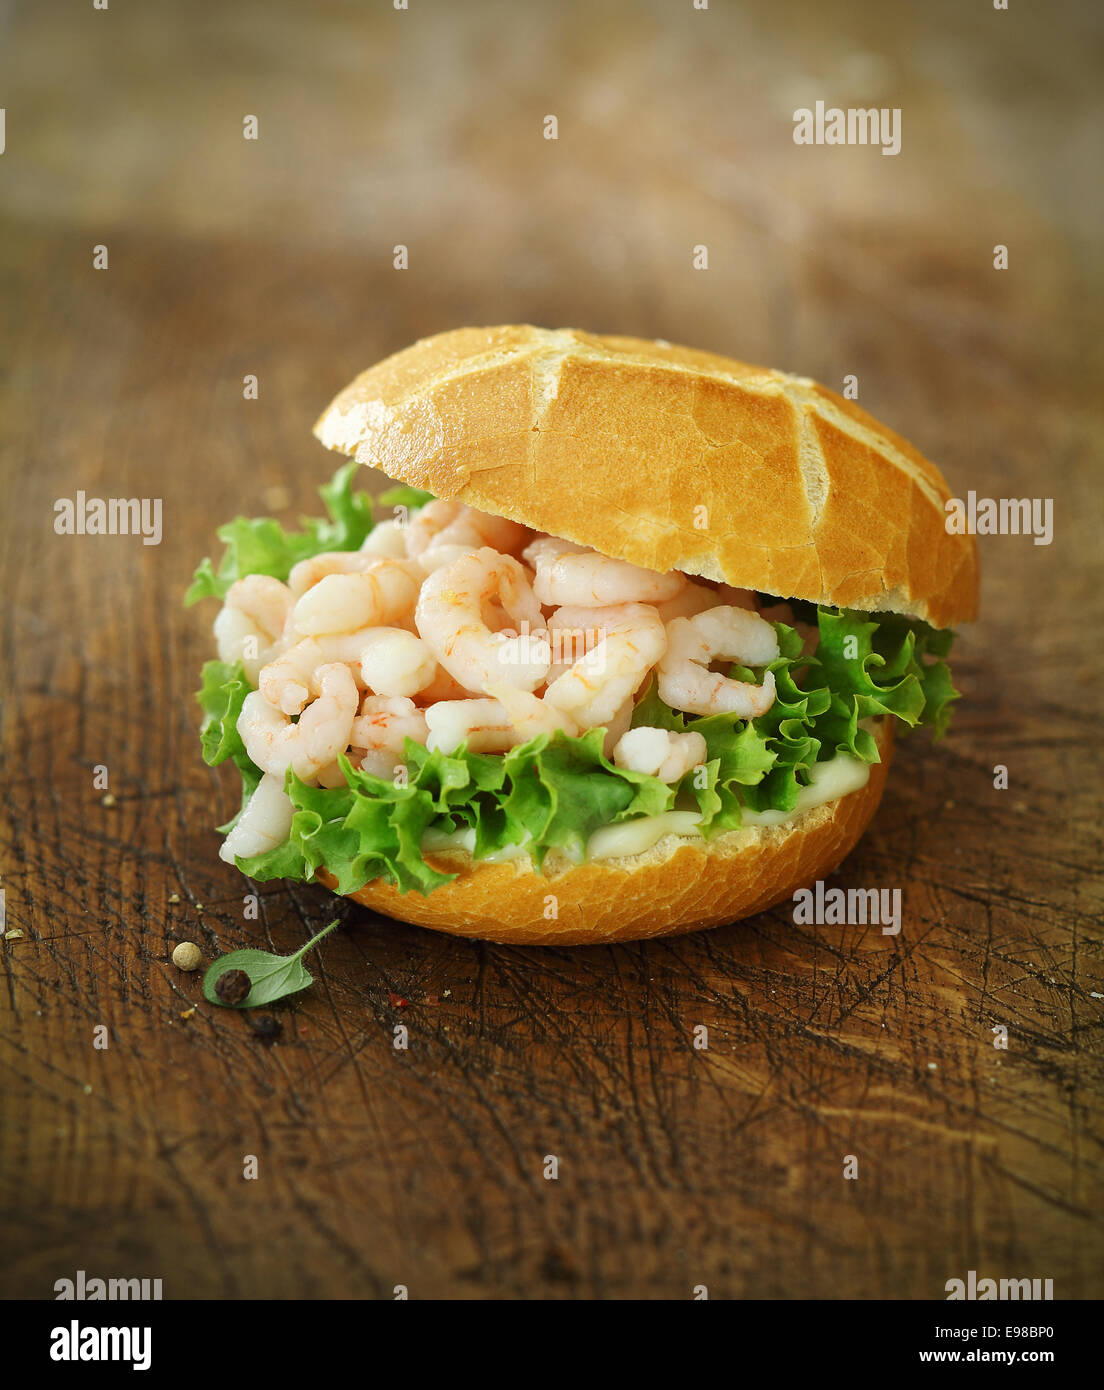 Gourmet Meeresfrüchte Roll gefüllt mit kleinen entdärmt Garnelen oder Shrimps auf einem Bett aus frischen Salat knackig knusprigen goldenen gerollt Stockfoto